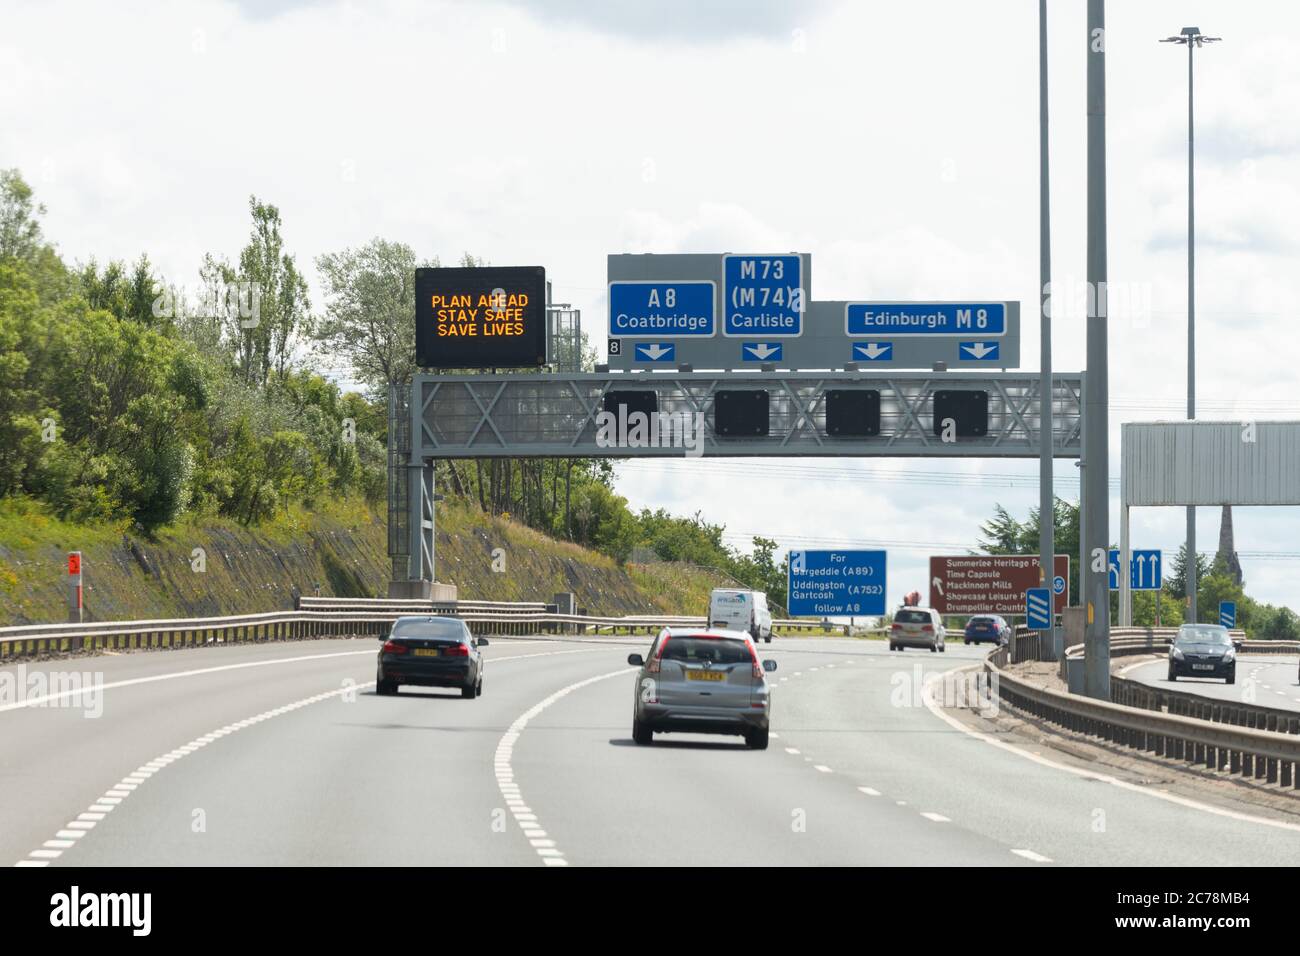 Pianificare in anticipo rimanere sicuro salvare vite a messaggio variabile sull'autostrada M8 Glasgow, Scozia, Regno Unito durante il coronavirus pandemic lockdown easing Foto Stock